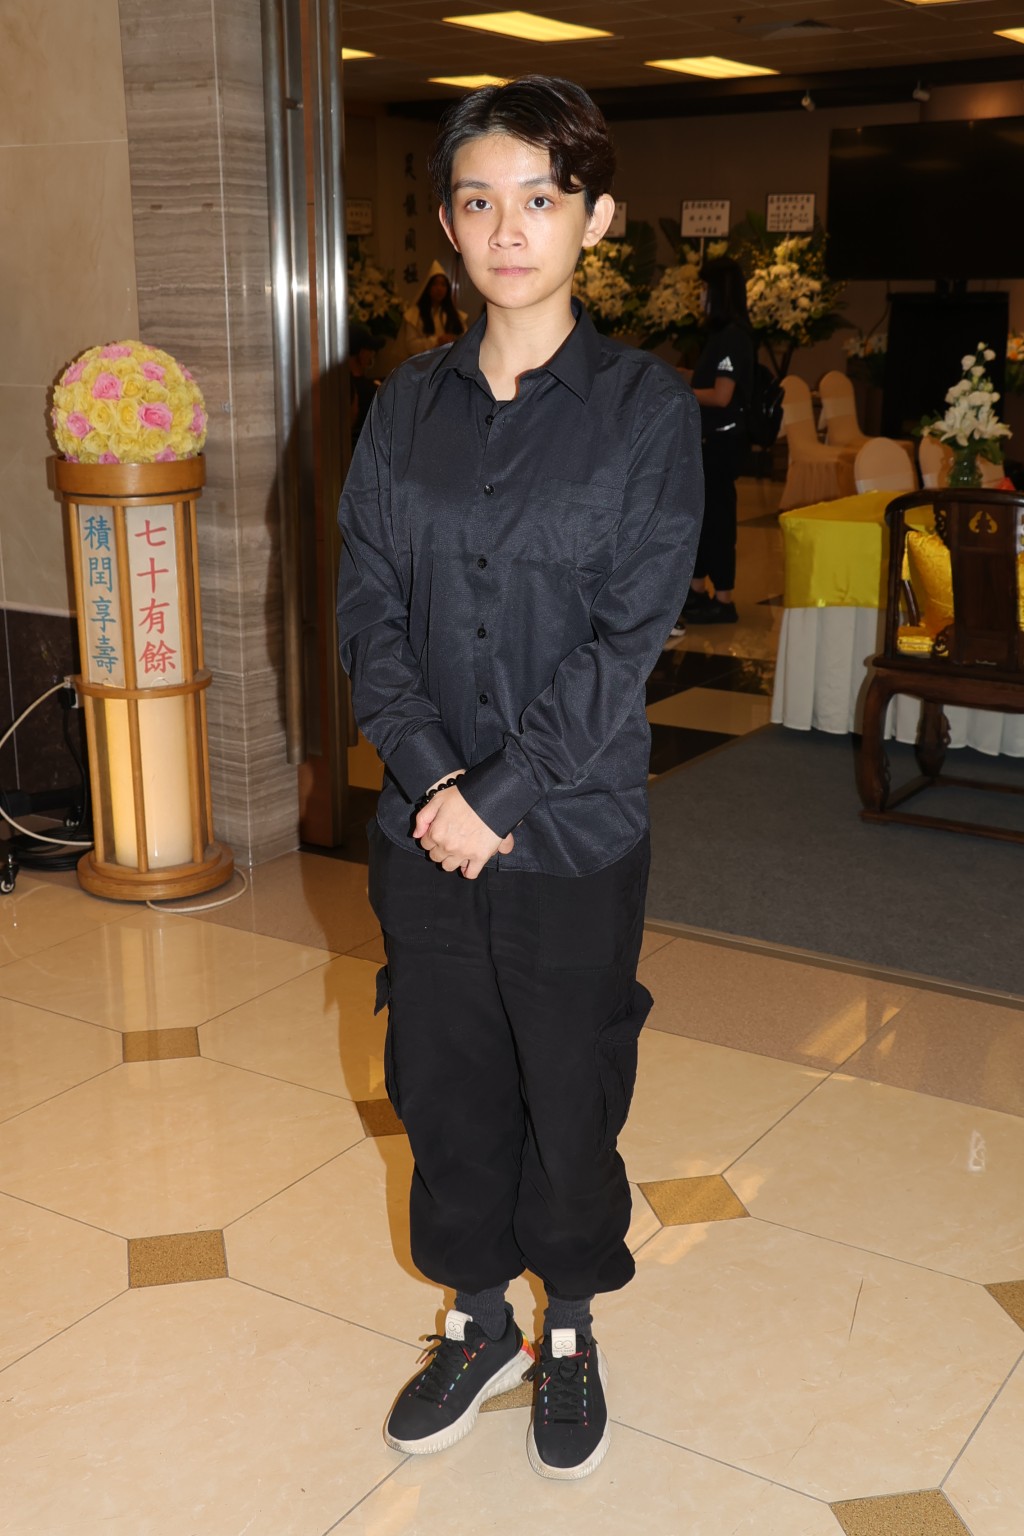 孟希璘是TVB艺员。